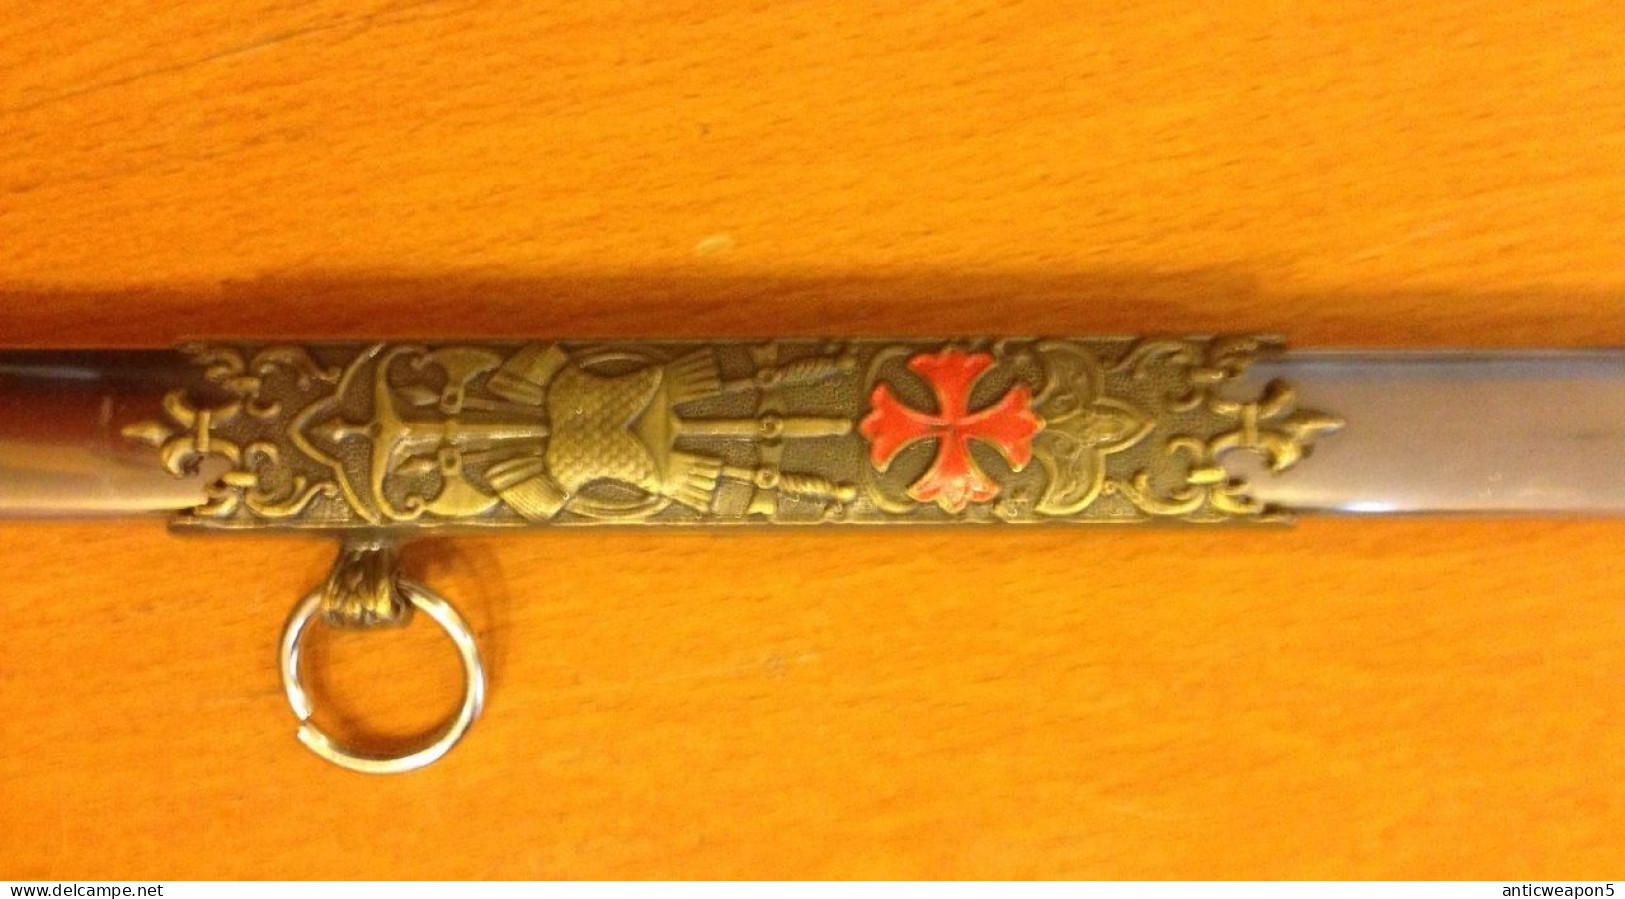 ETATS-UNIS. Épée maçonnique vers 1930 (C175)